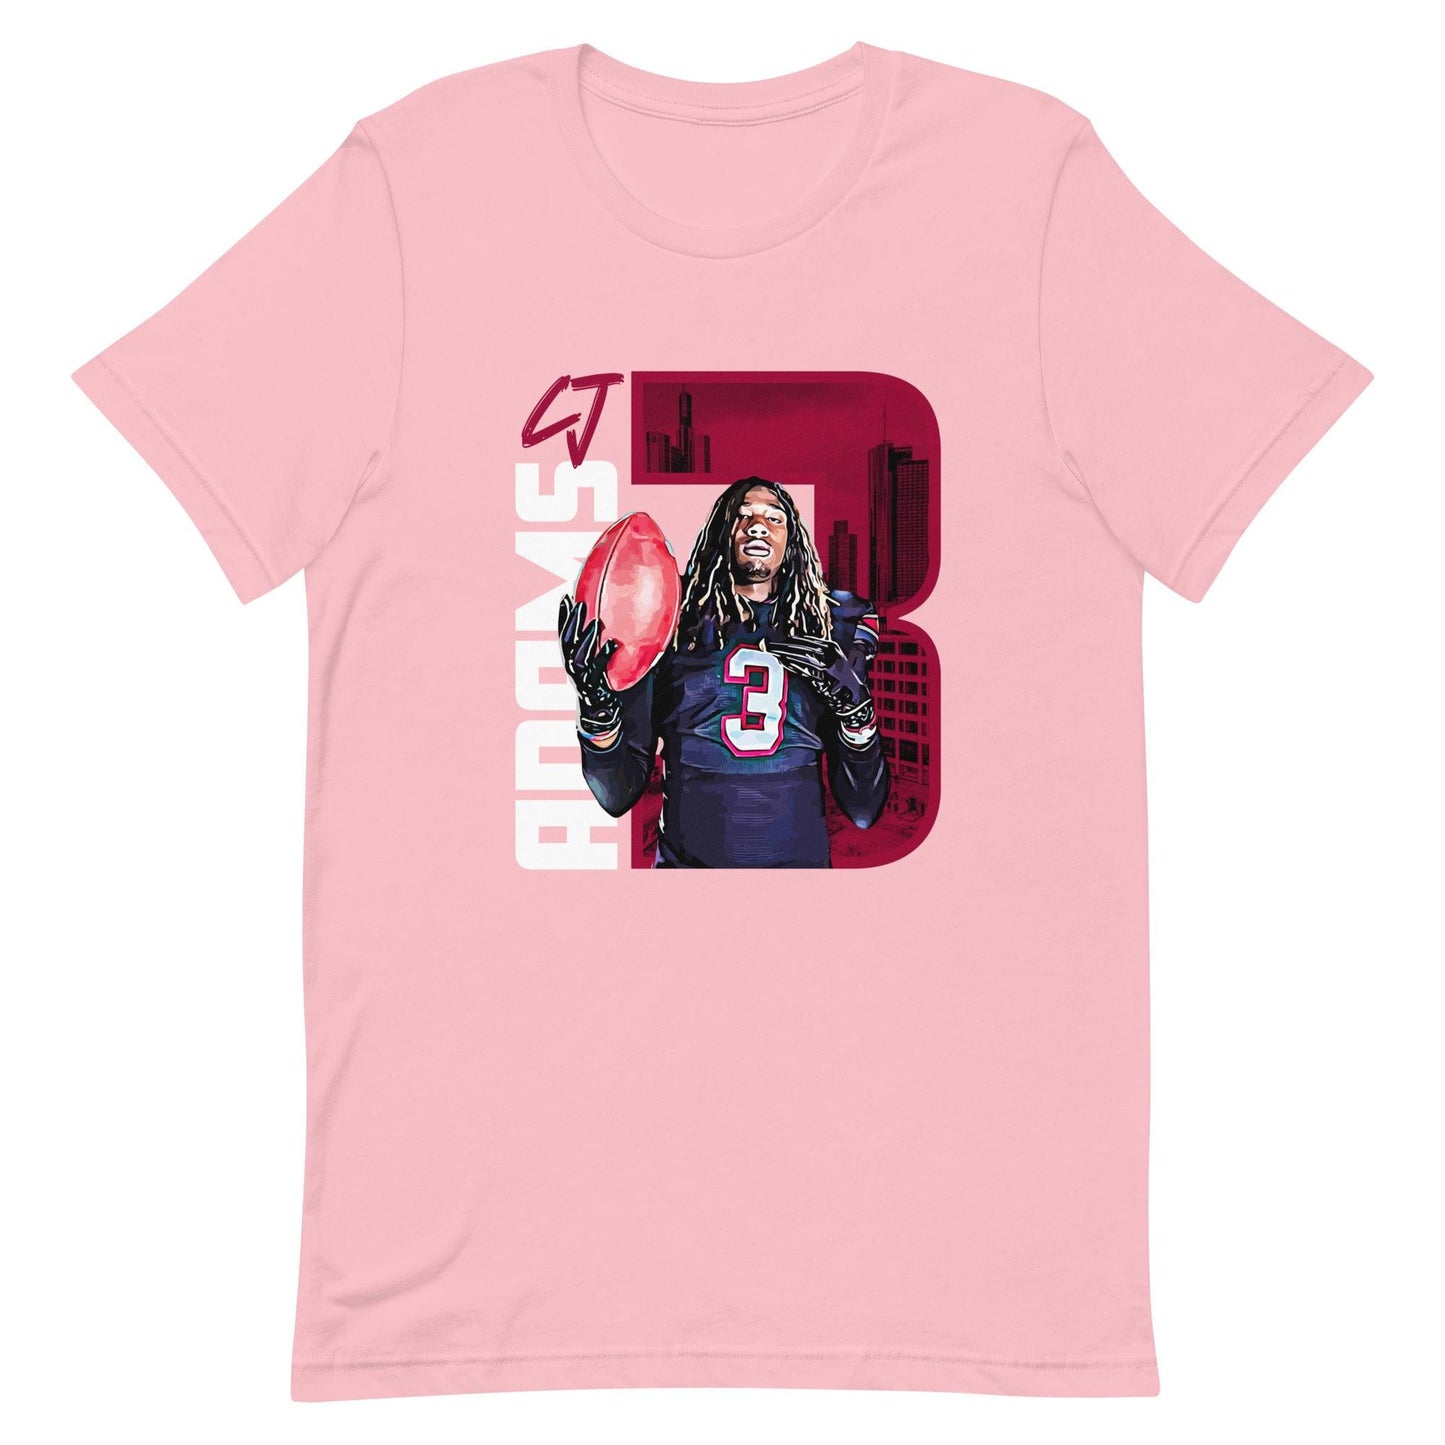 CJ Adams "Gameday" t-shirt - Fan Arch